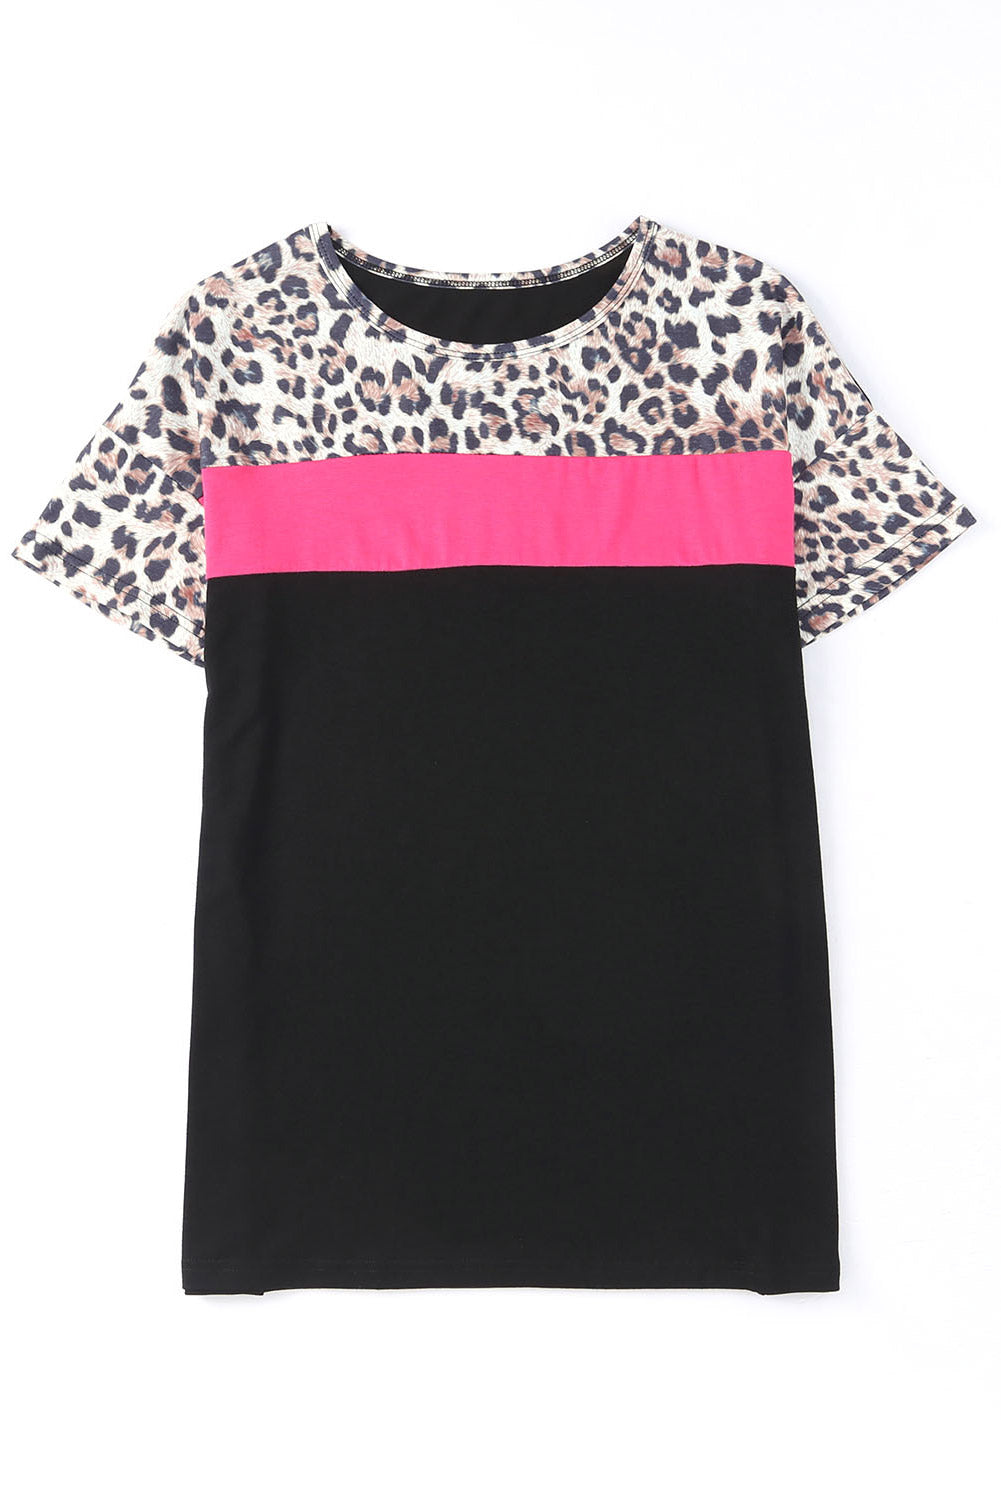 Black Leopard Colorblock Splicing T-Shirt